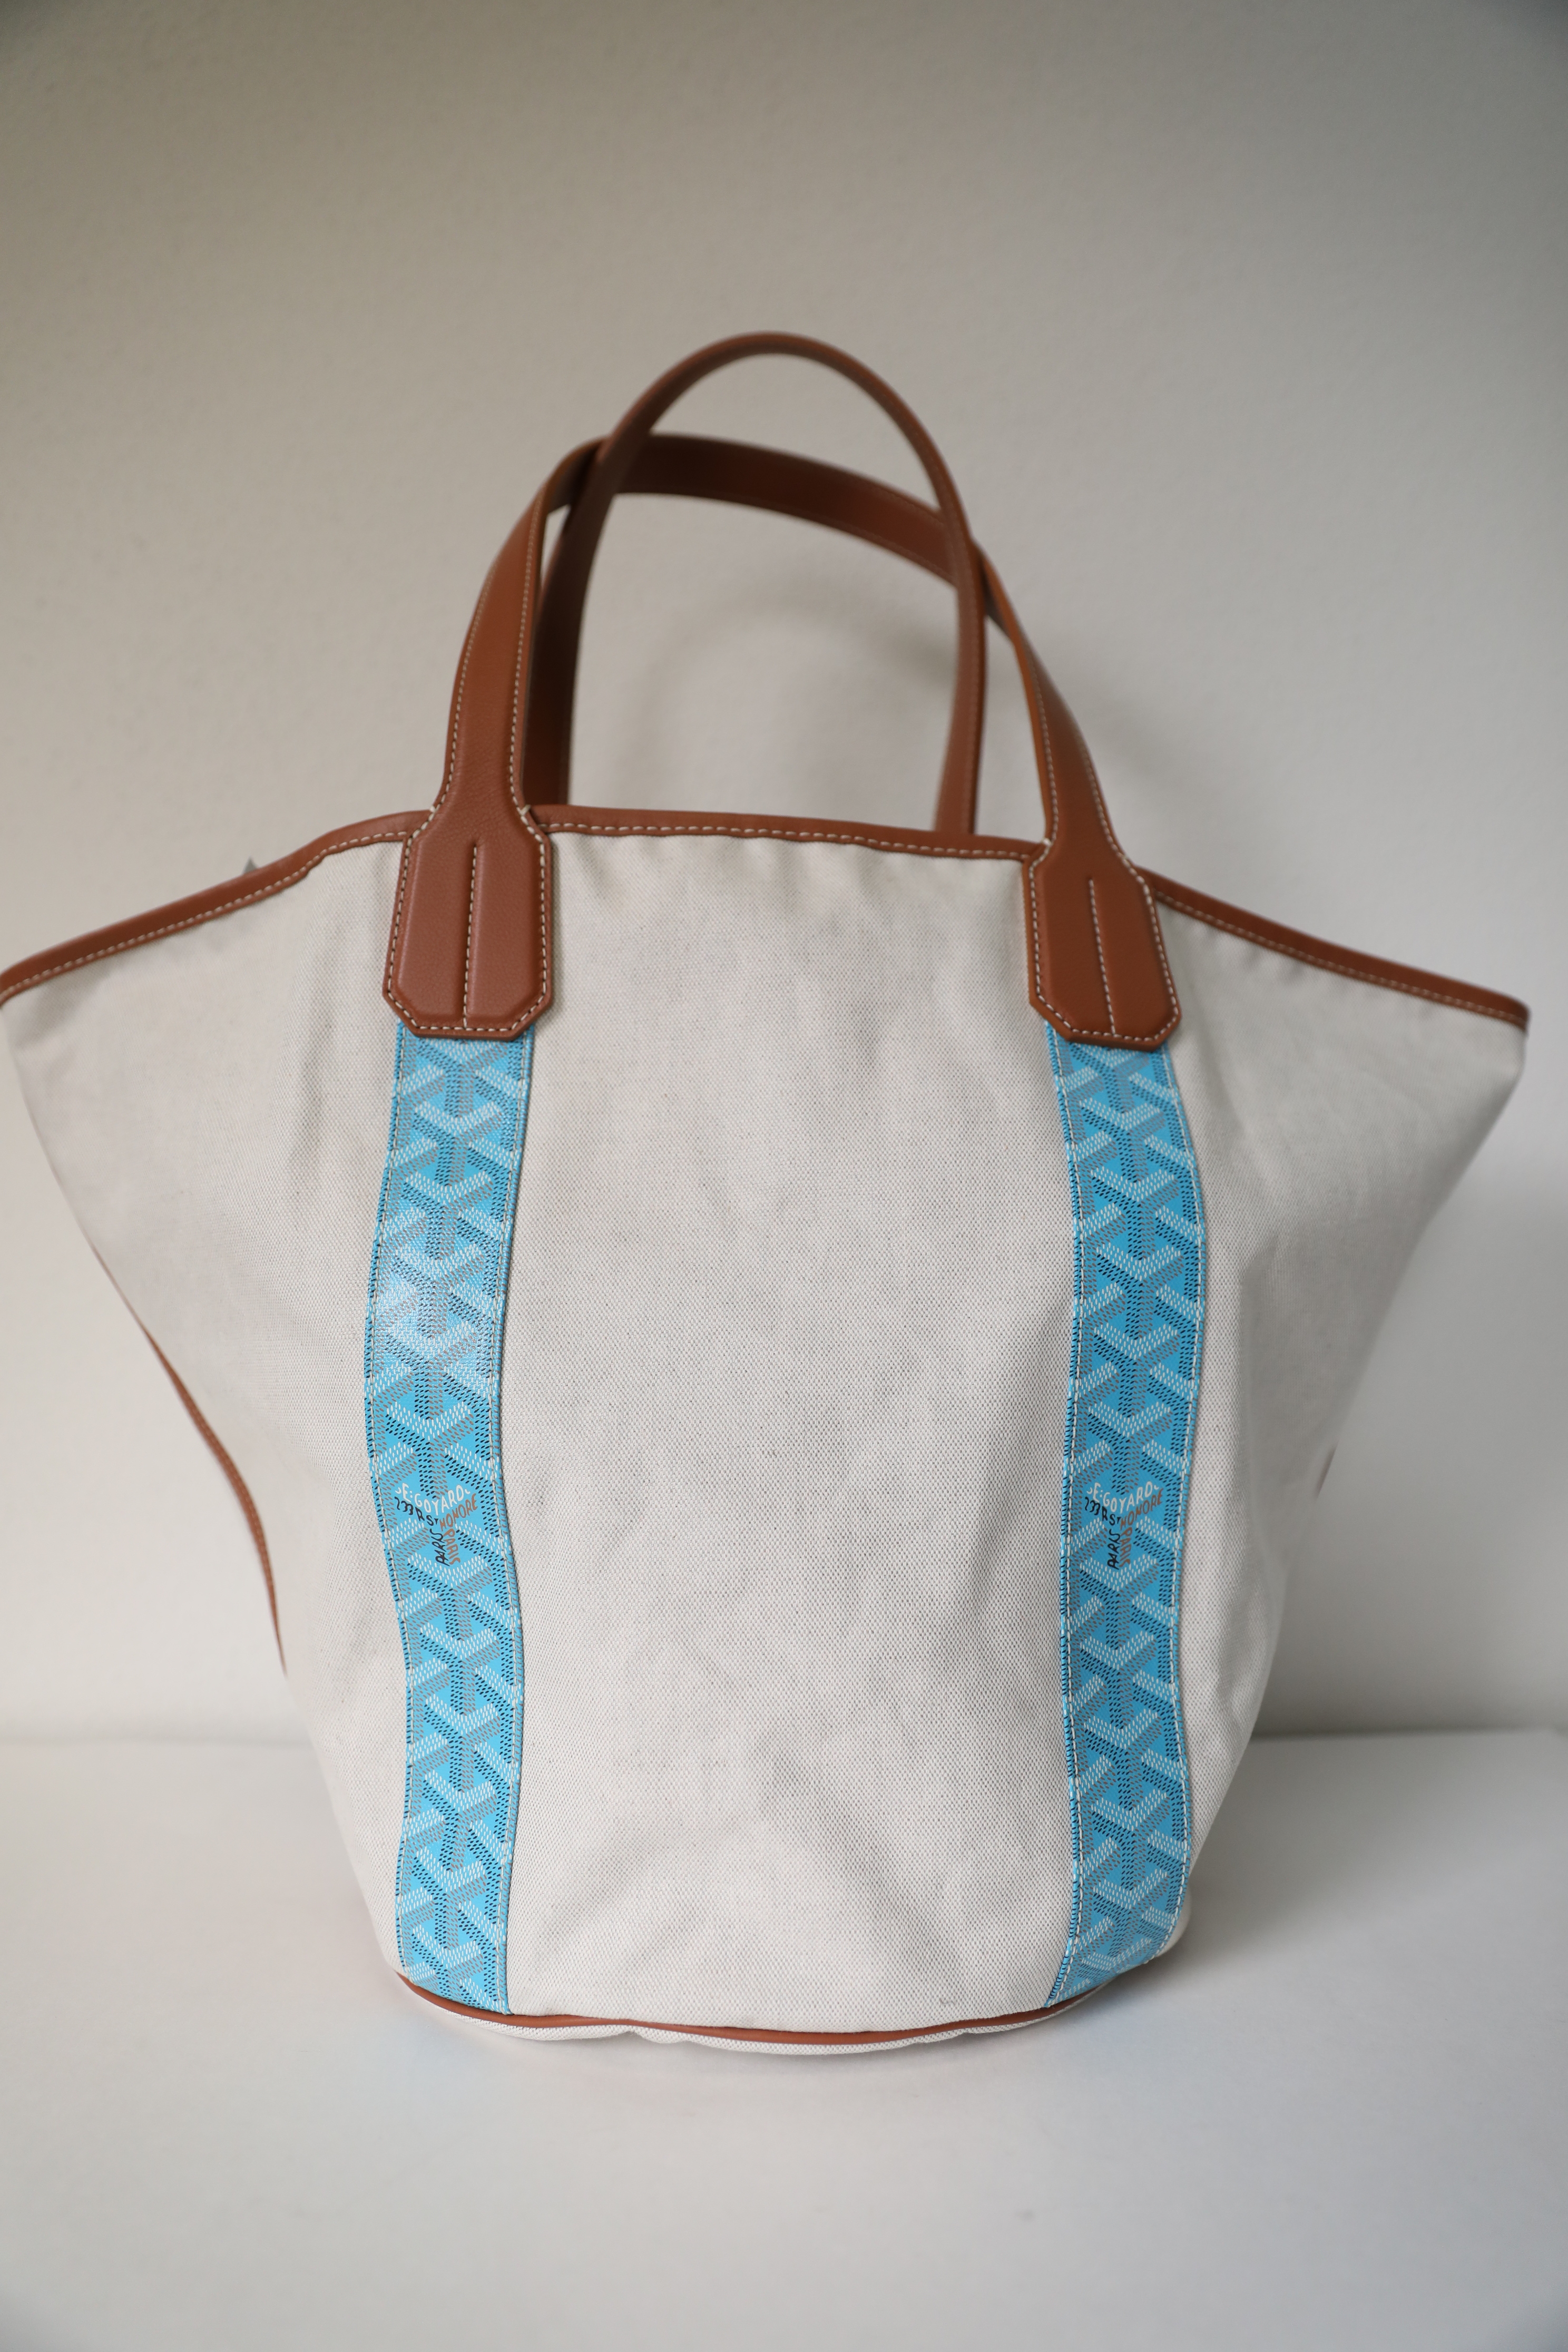 Goyard Belharra - For Sale on 1stDibs  belharra bag, goyard belharra  reversible tote, goyard bag handle melting